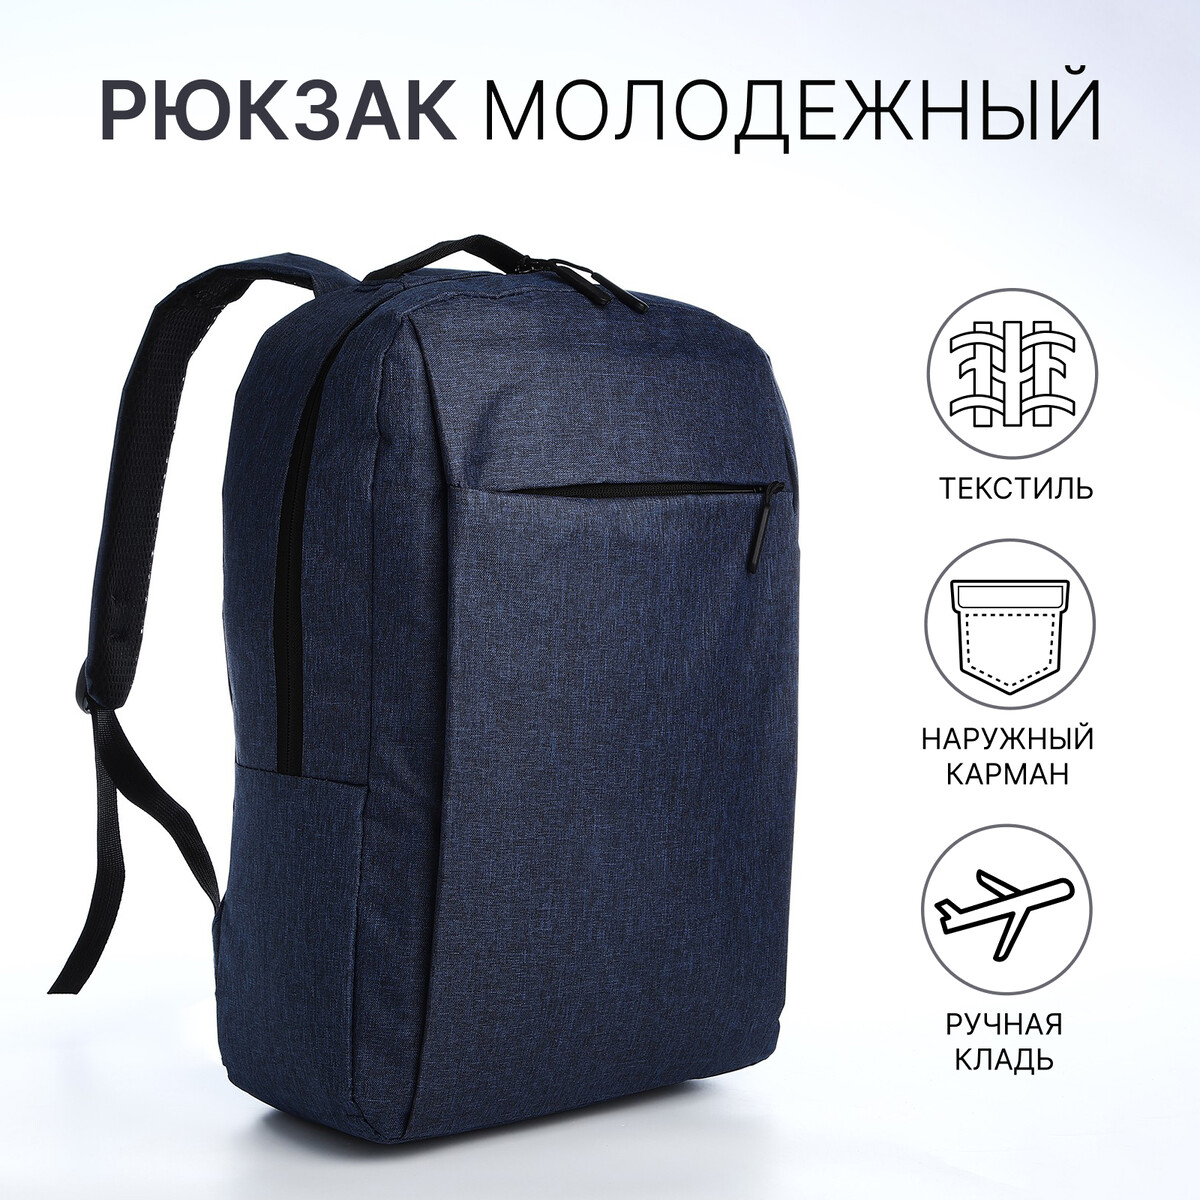 Рюкзак молодежный из текстиля, наружный карман, цвет синий